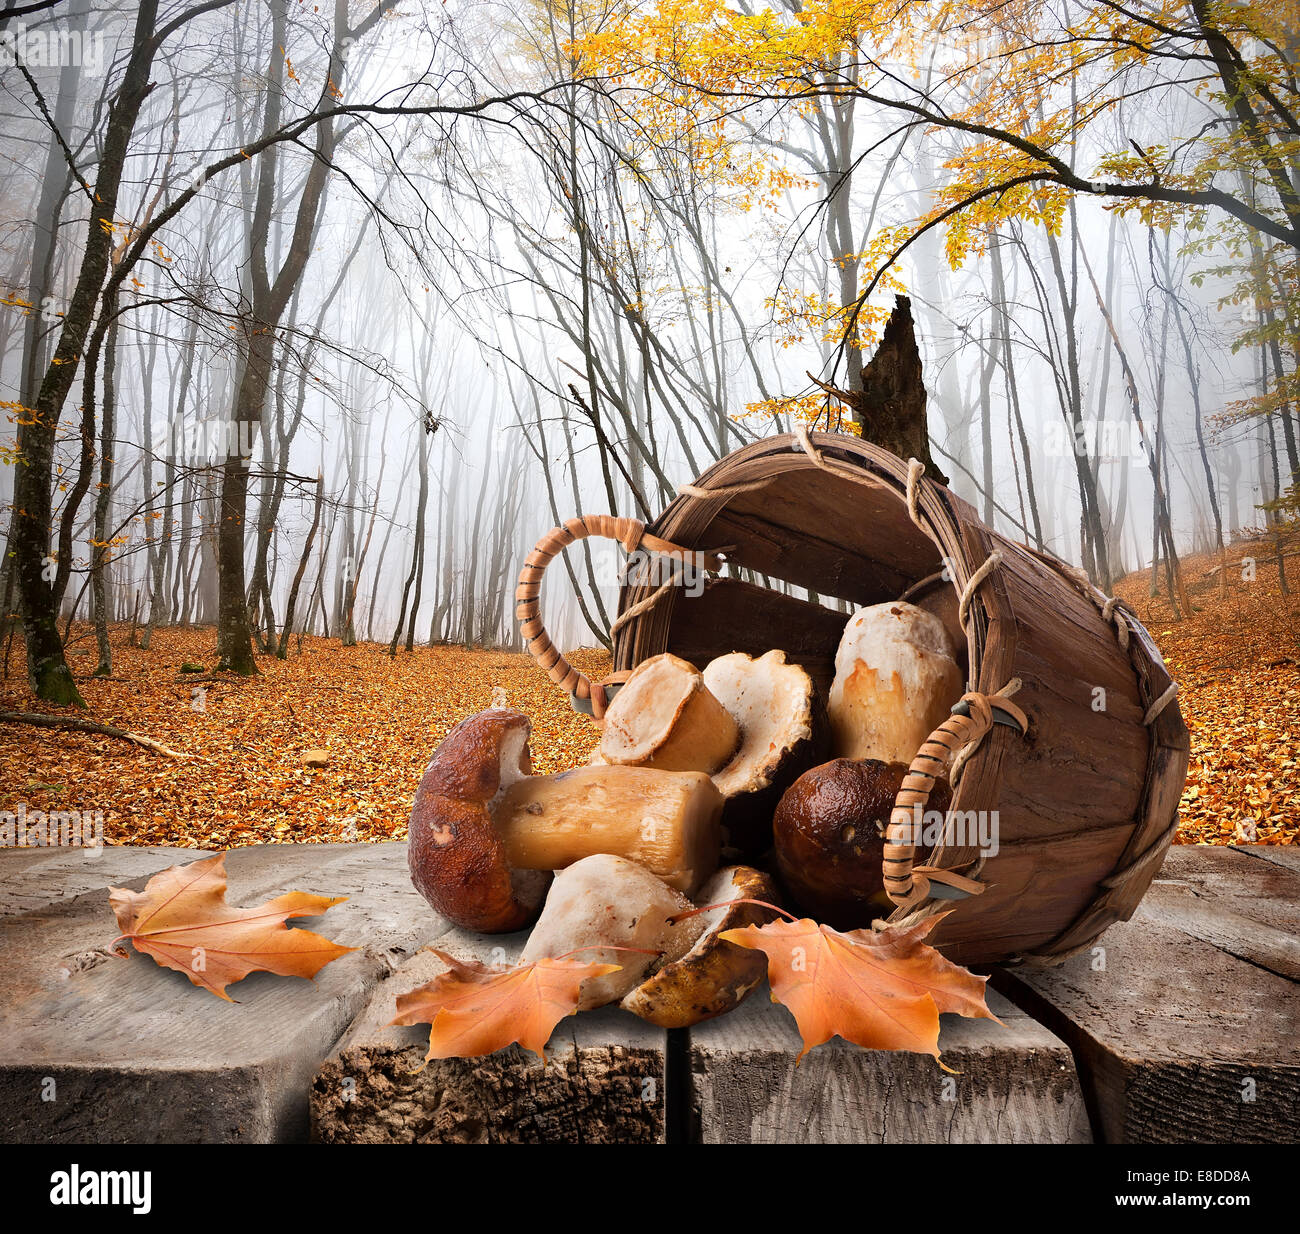 Les champignons dans un panier et forêt d'automne Banque D'Images